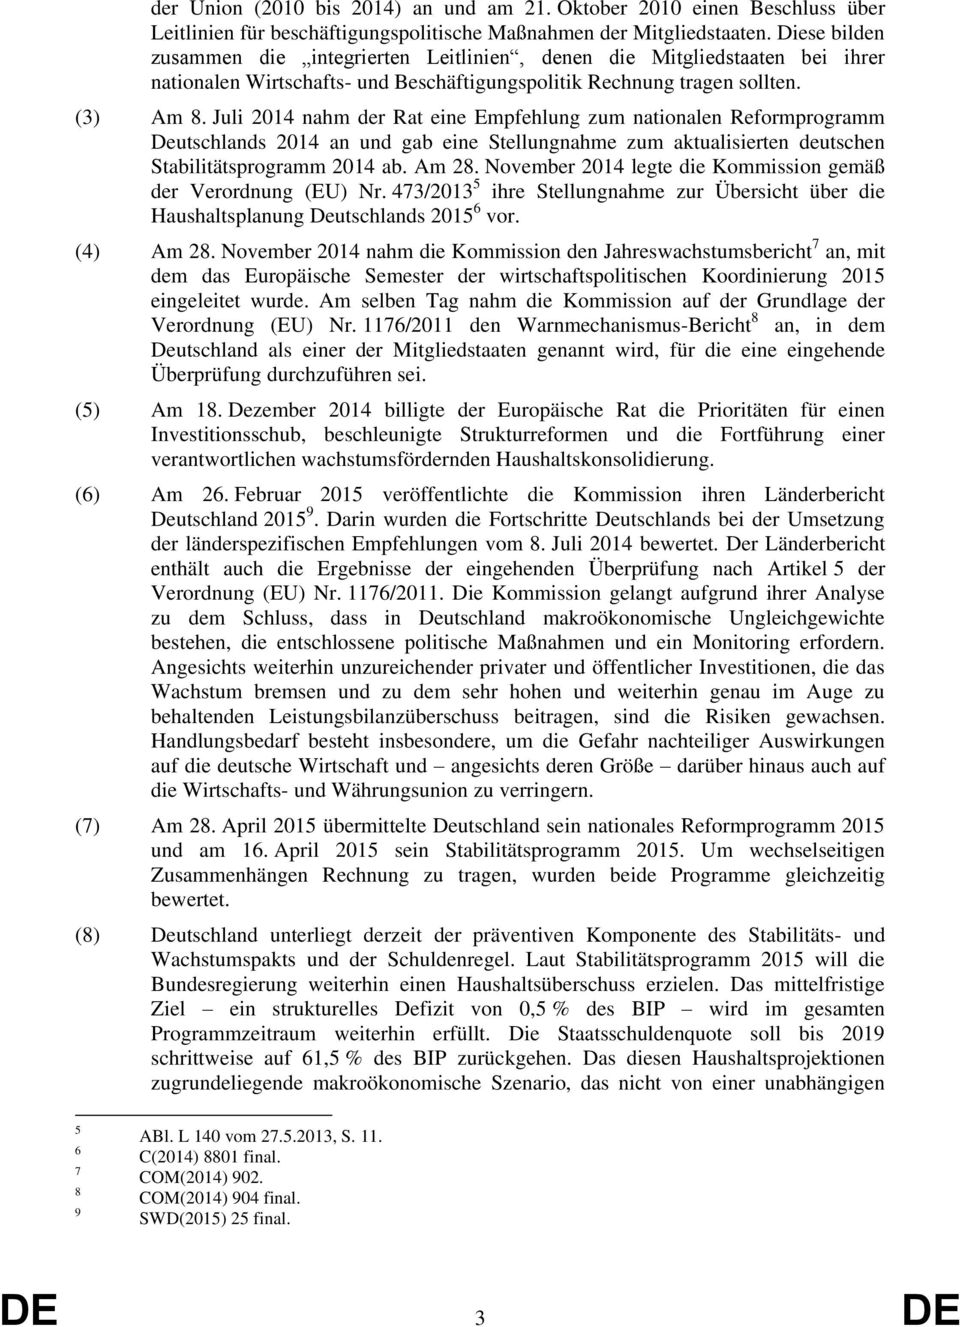 Juli 2014 nahm der Rat eine Empfehlung zum nationalen Reformprogramm Deutschlands 2014 an und gab eine Stellungnahme zum aktualisierten deutschen Stabilitätsprogramm 2014 ab. Am 28.